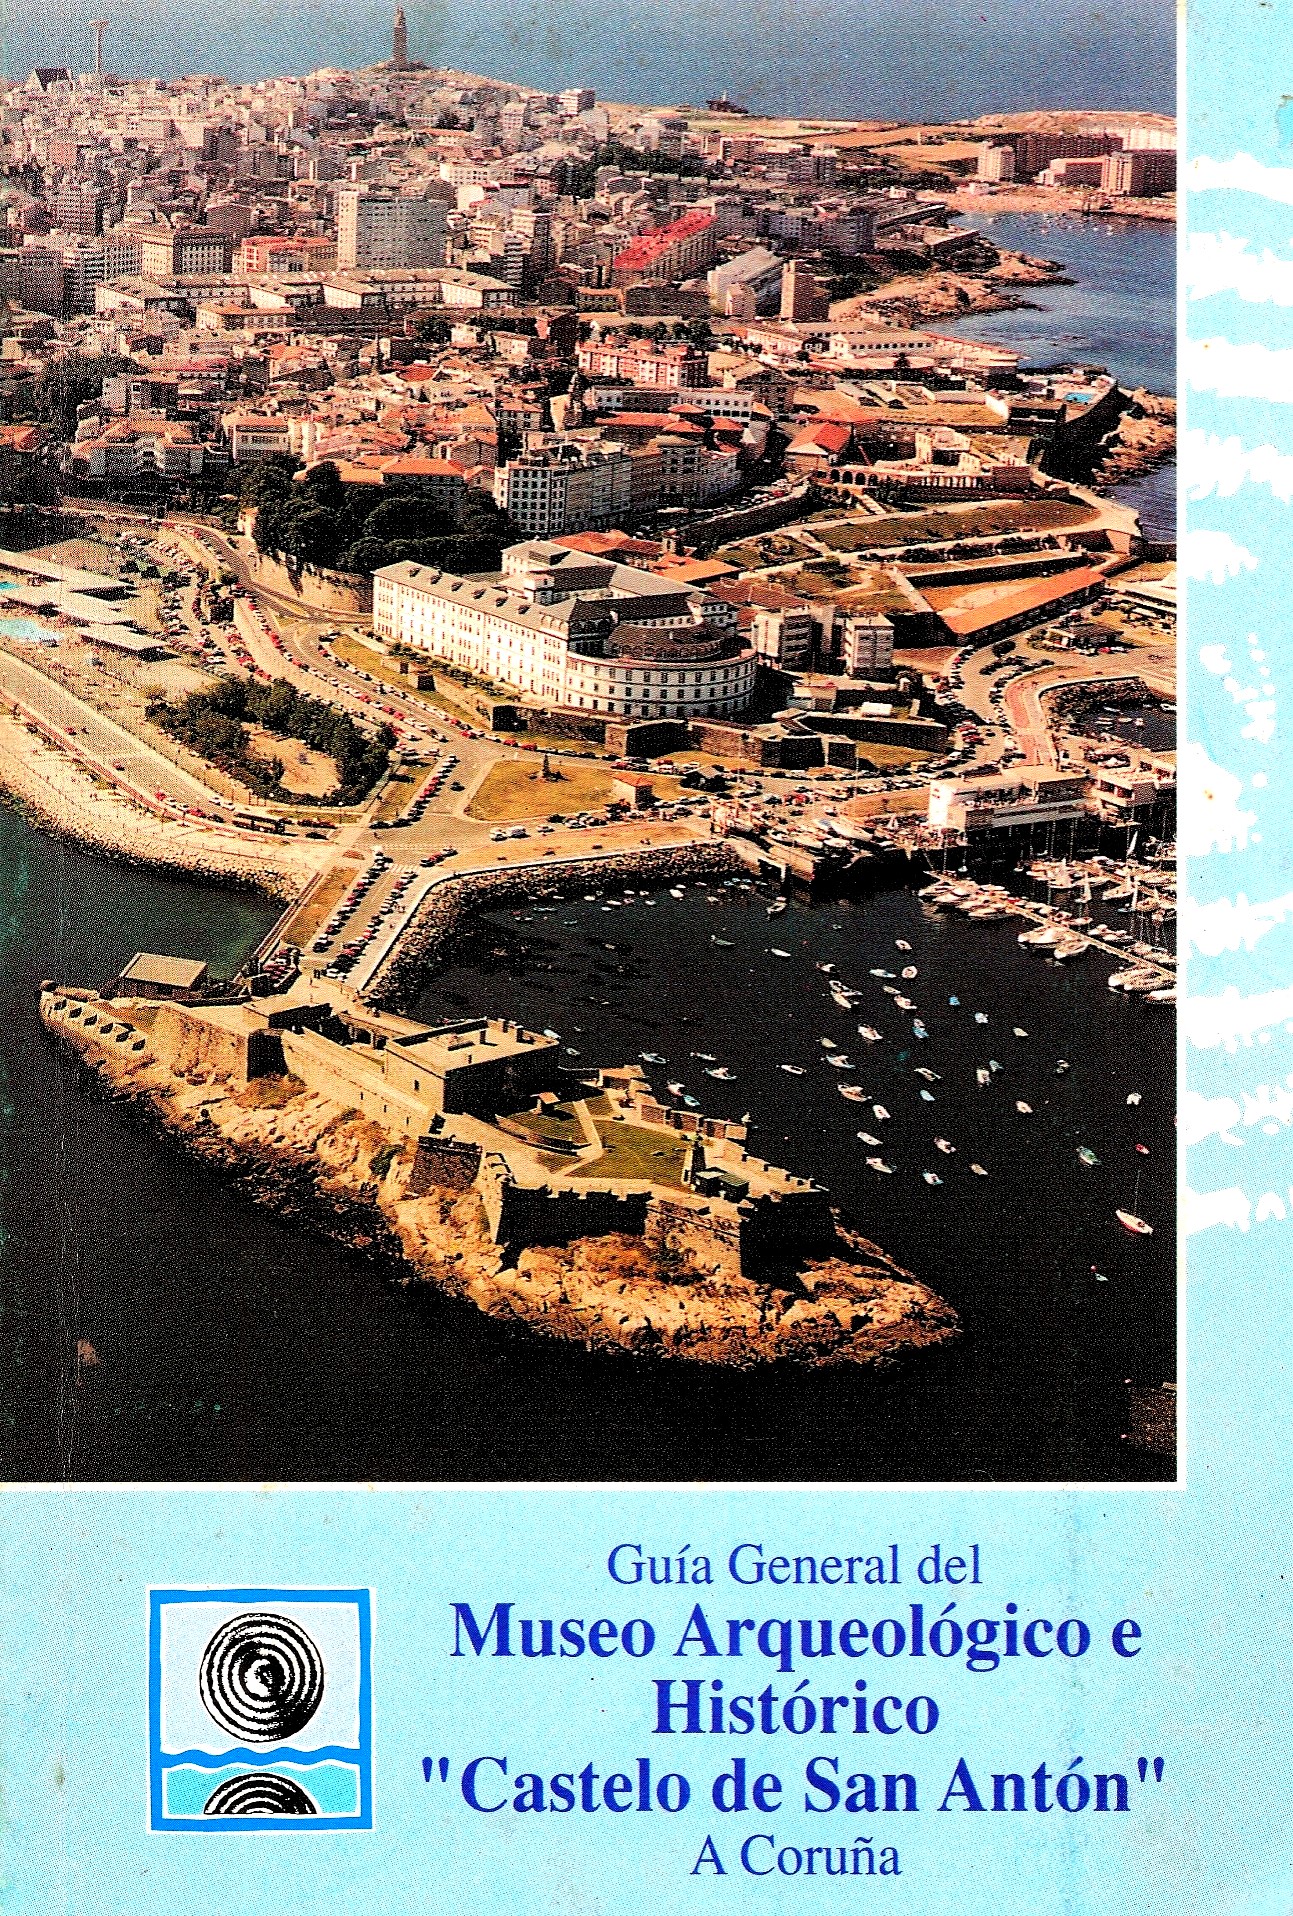 Ampliar: Guía do Museo Arqueolóxico da Coruña